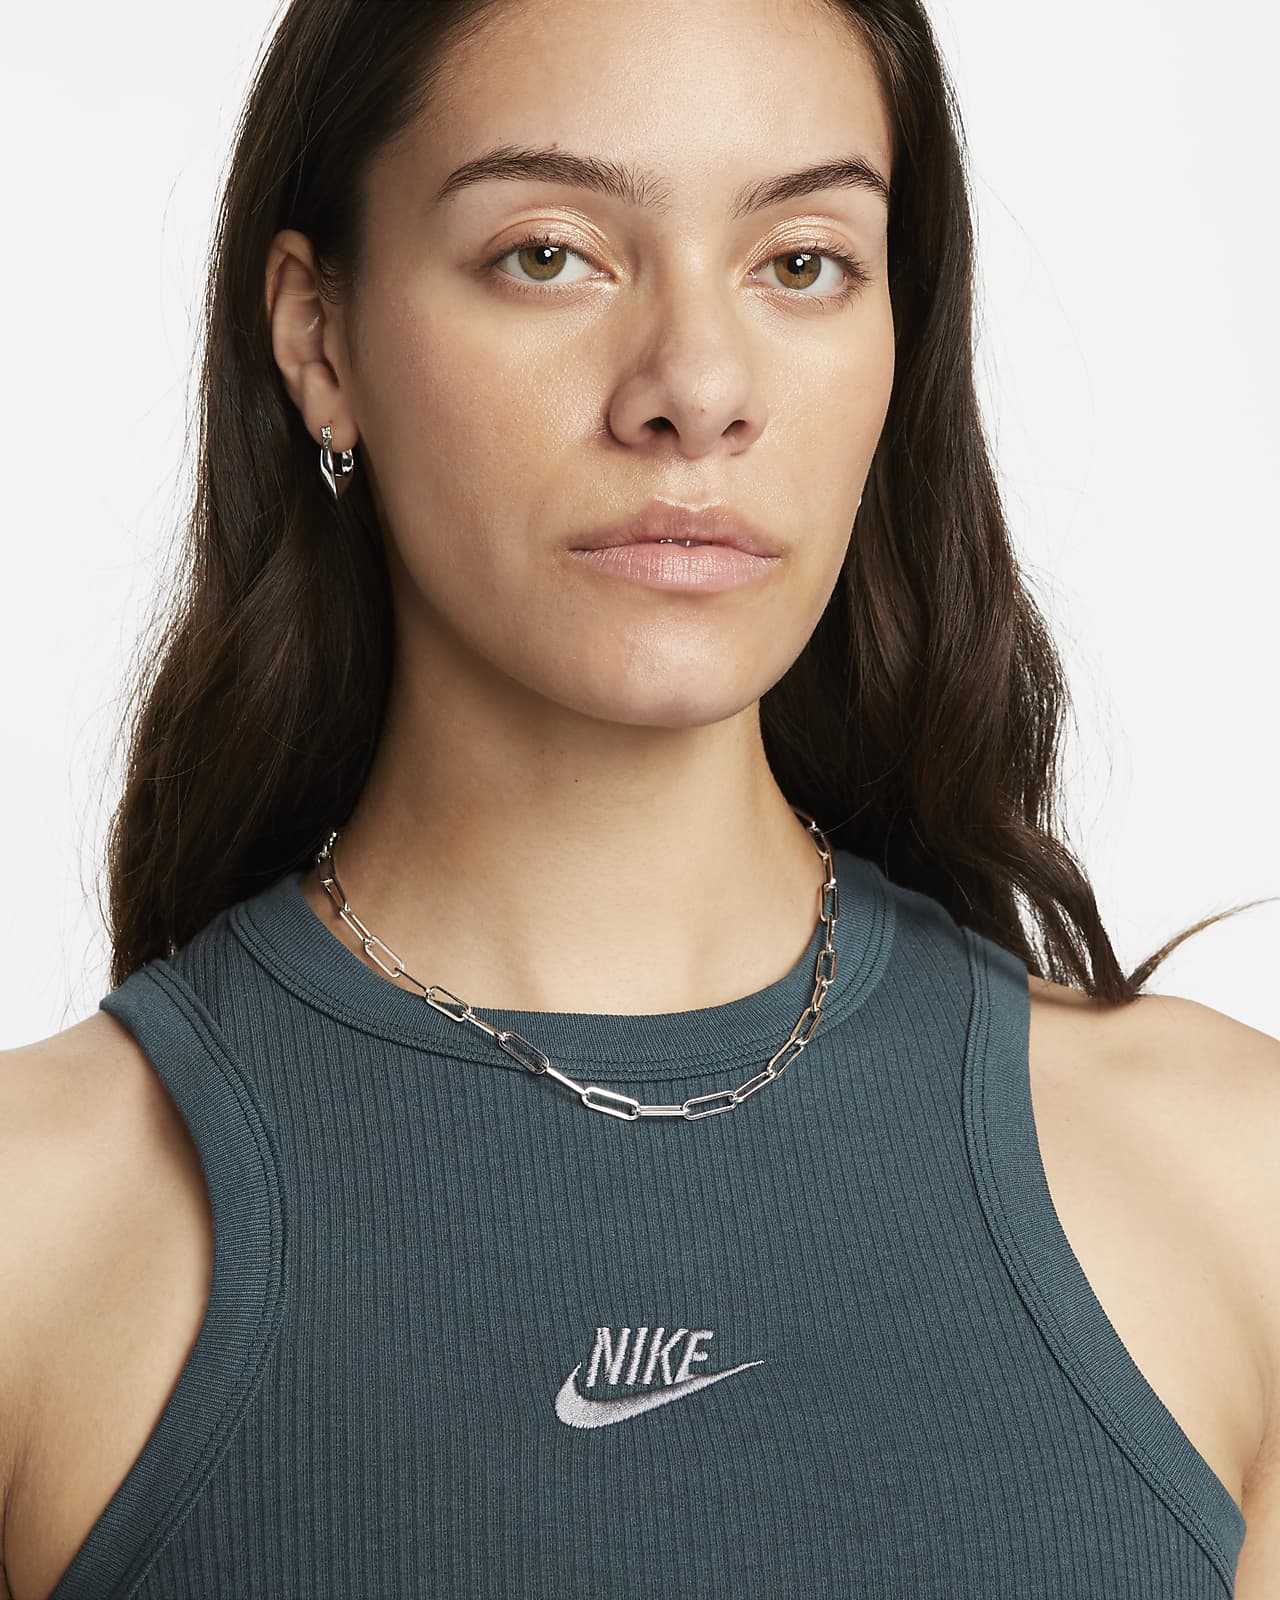 Nike Sportswear Women's Ribbed Tank Top